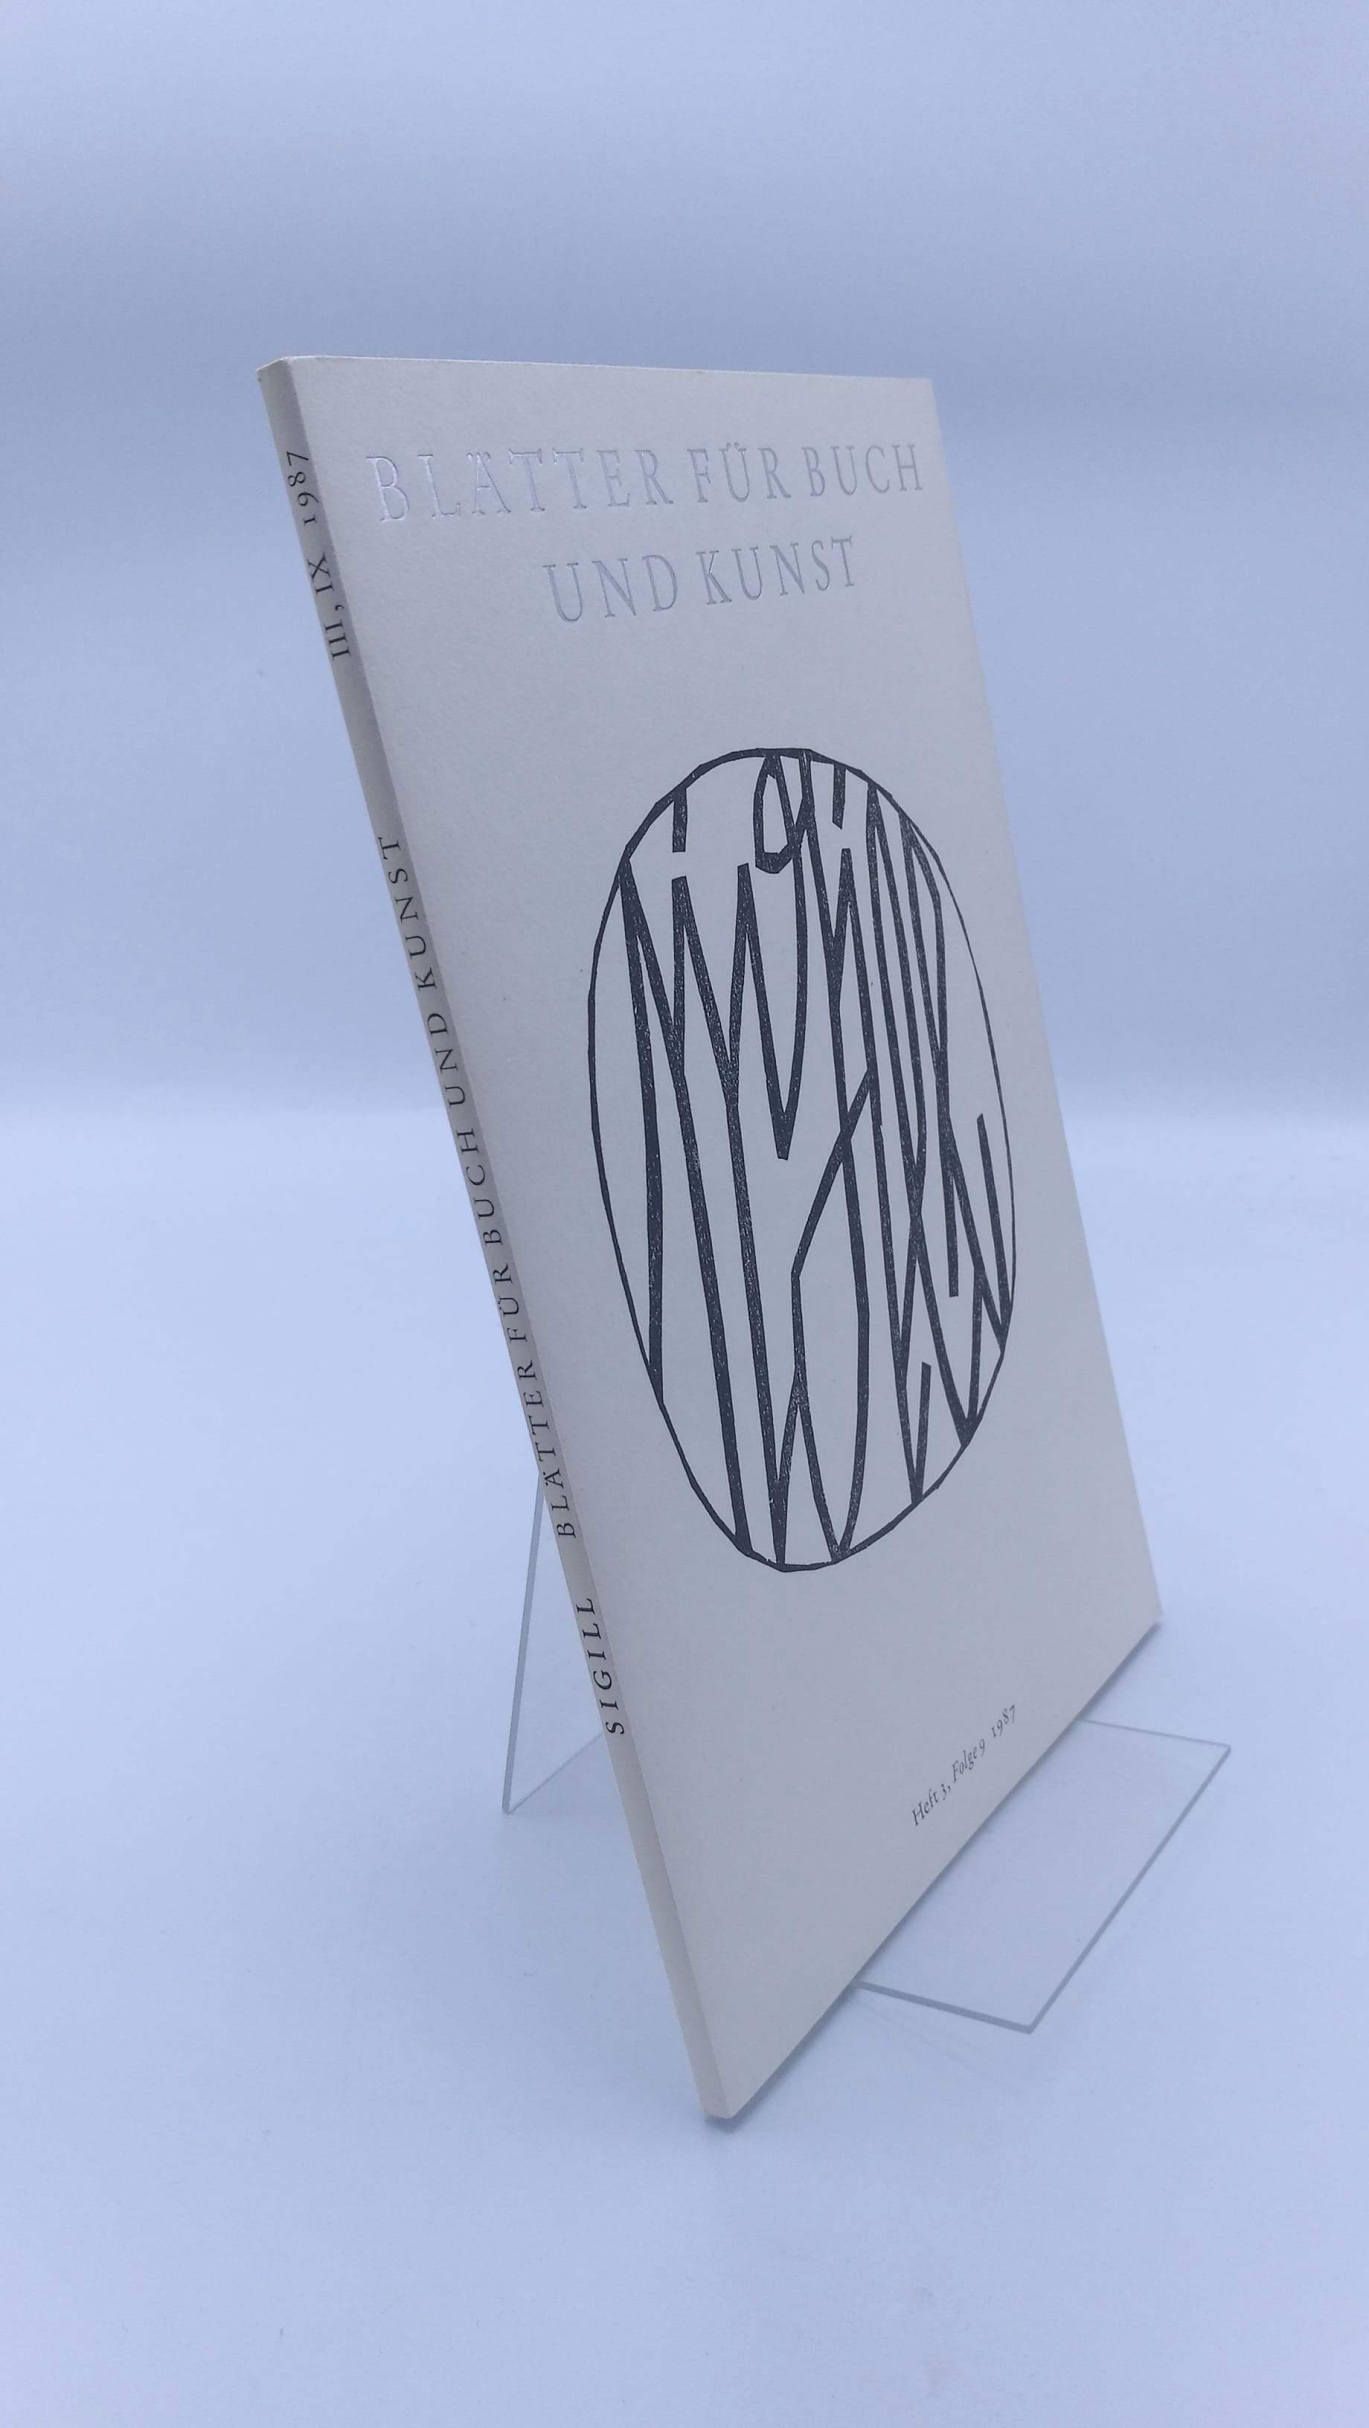 Otto Rohse (Hrsg.), : Sigill. Blätter für Buch und Kunst. Folge 9, Heft 3, 1987. 